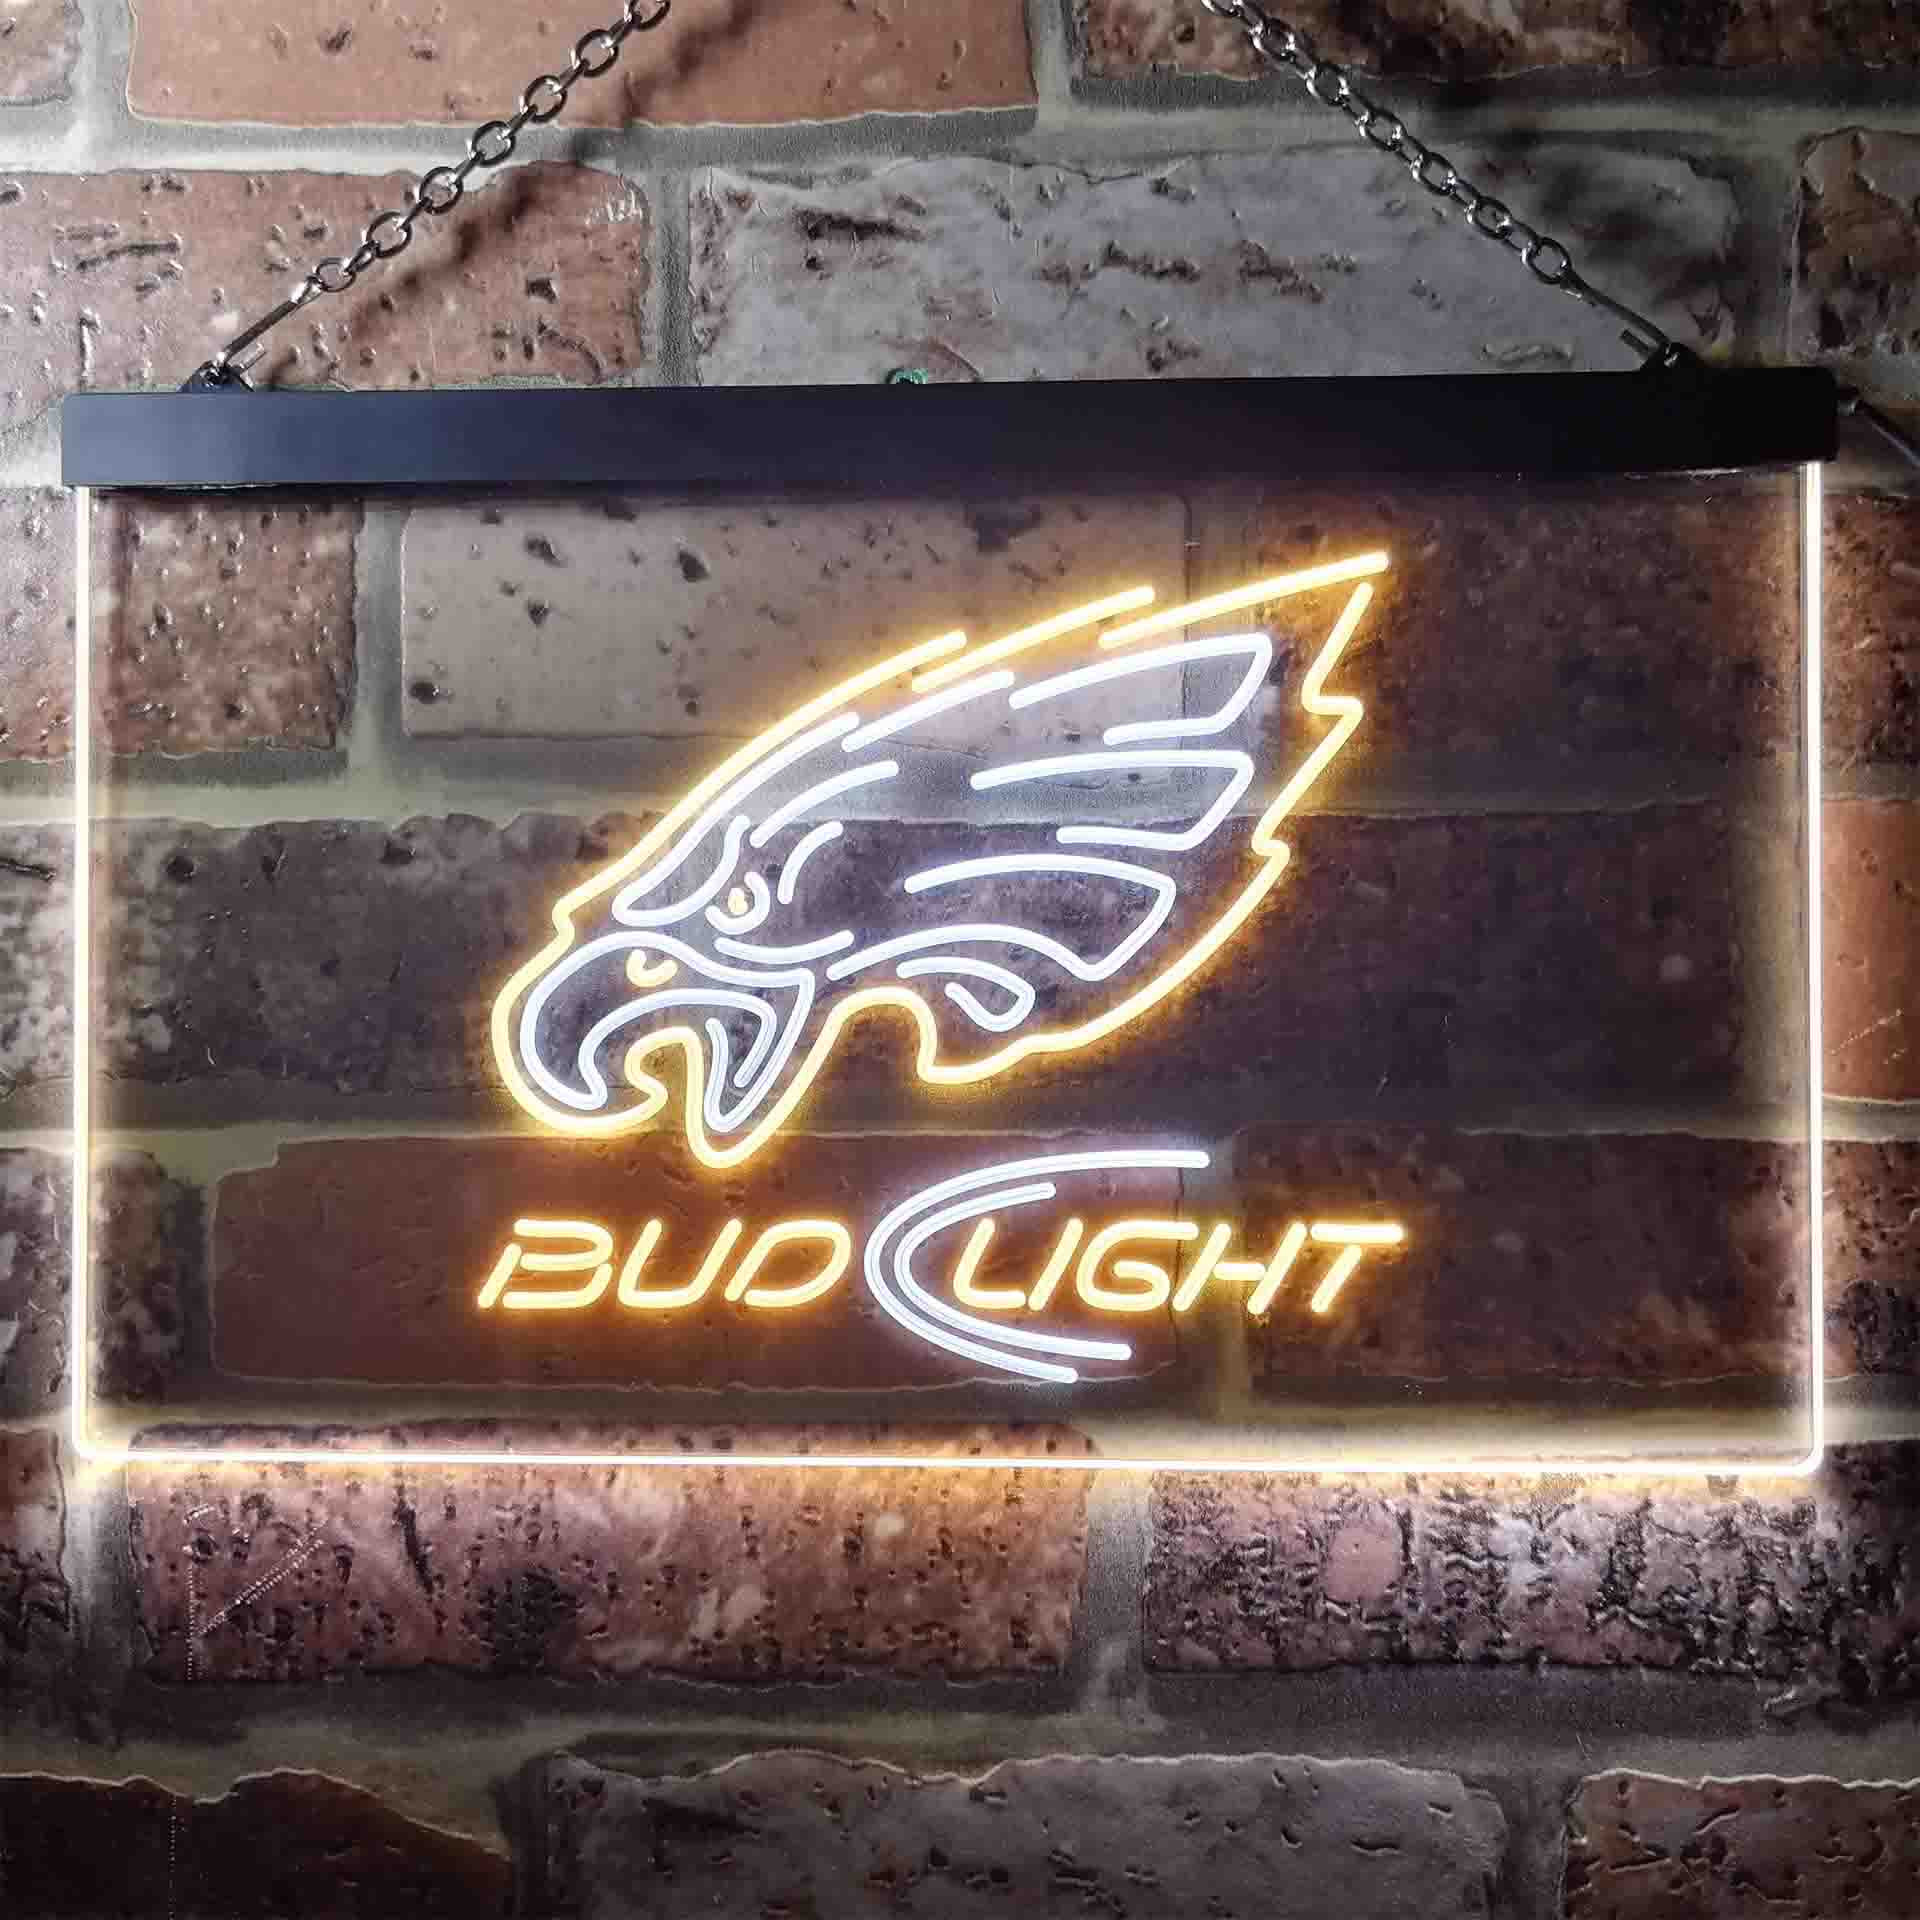 Bud Light Philadelphia Eagles Neon LED Sign